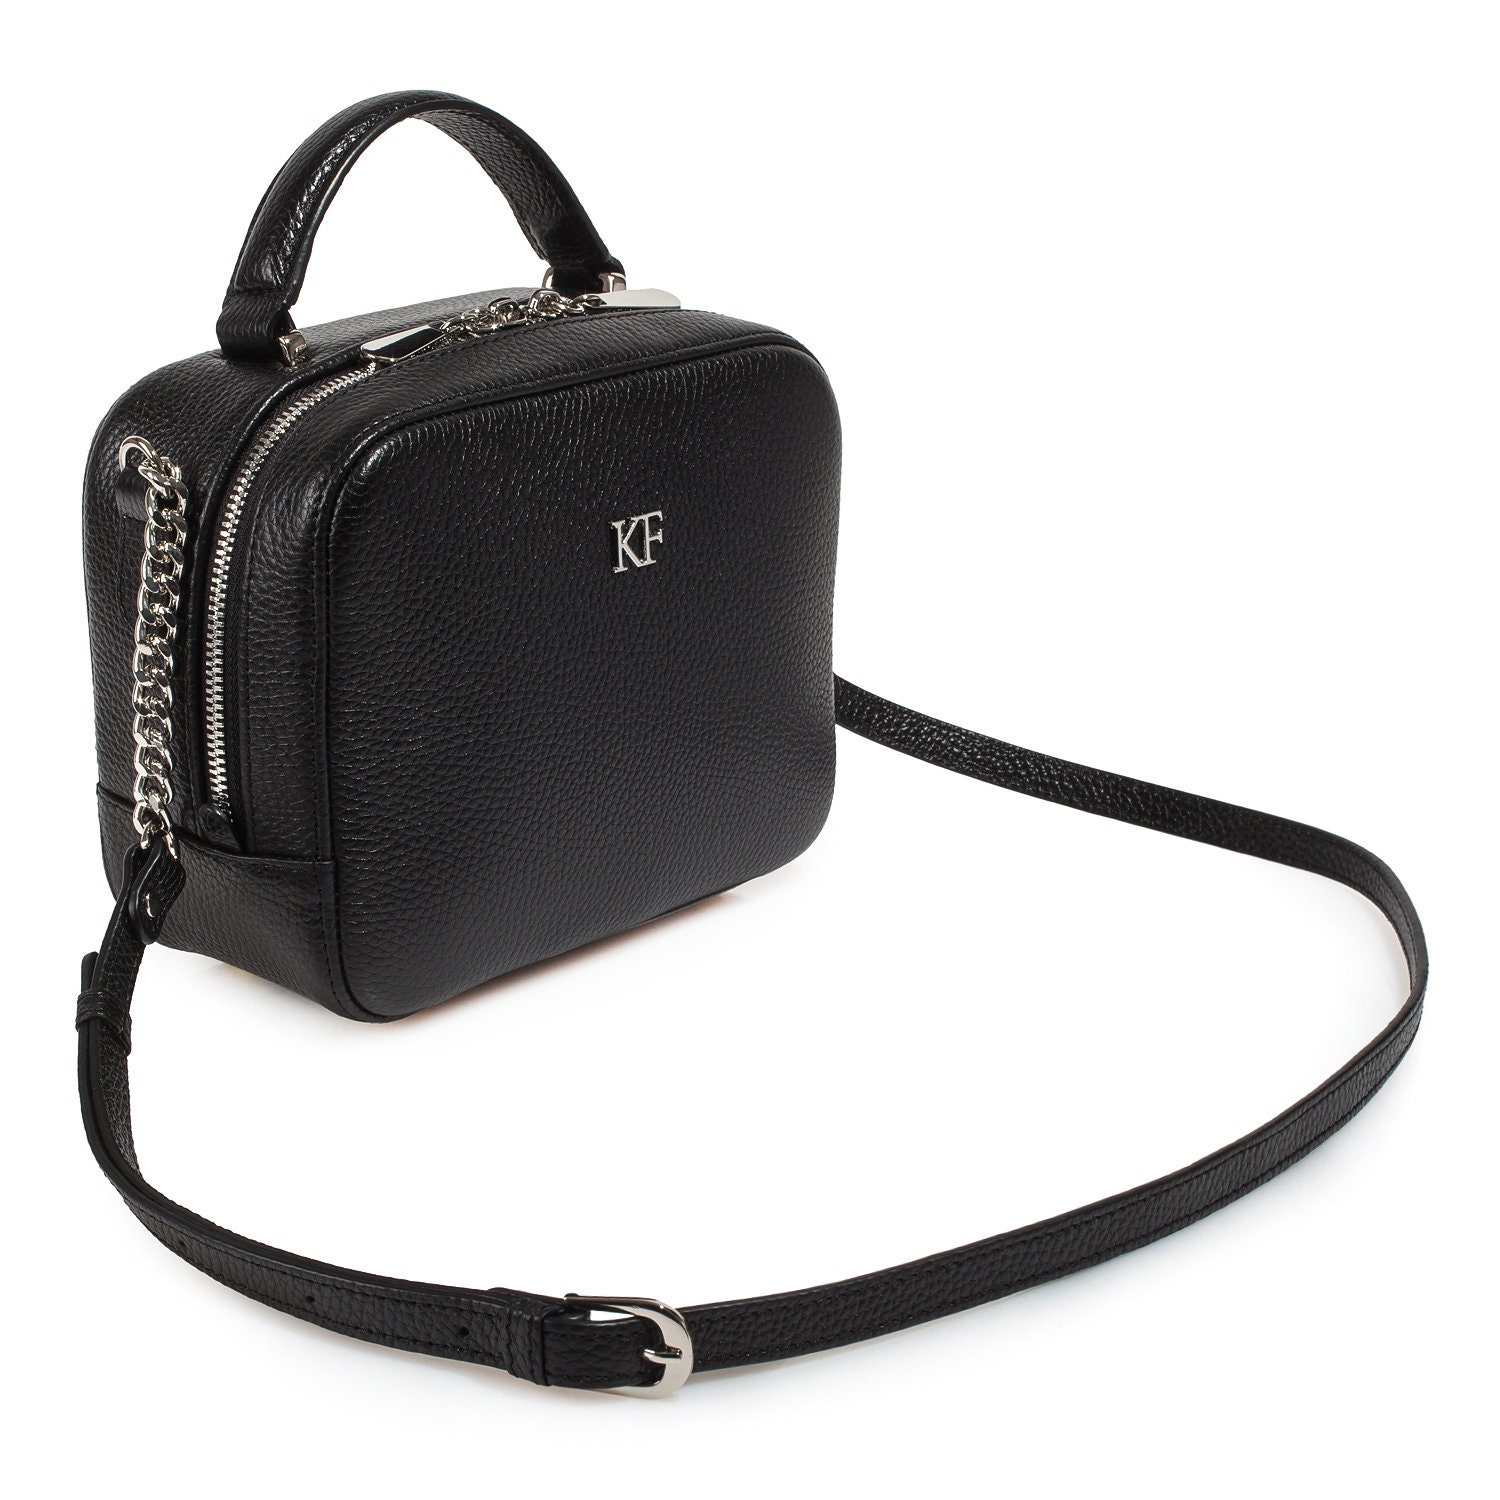 Leather Cross body Bag Black Leather Shoulder Bag | Etsy